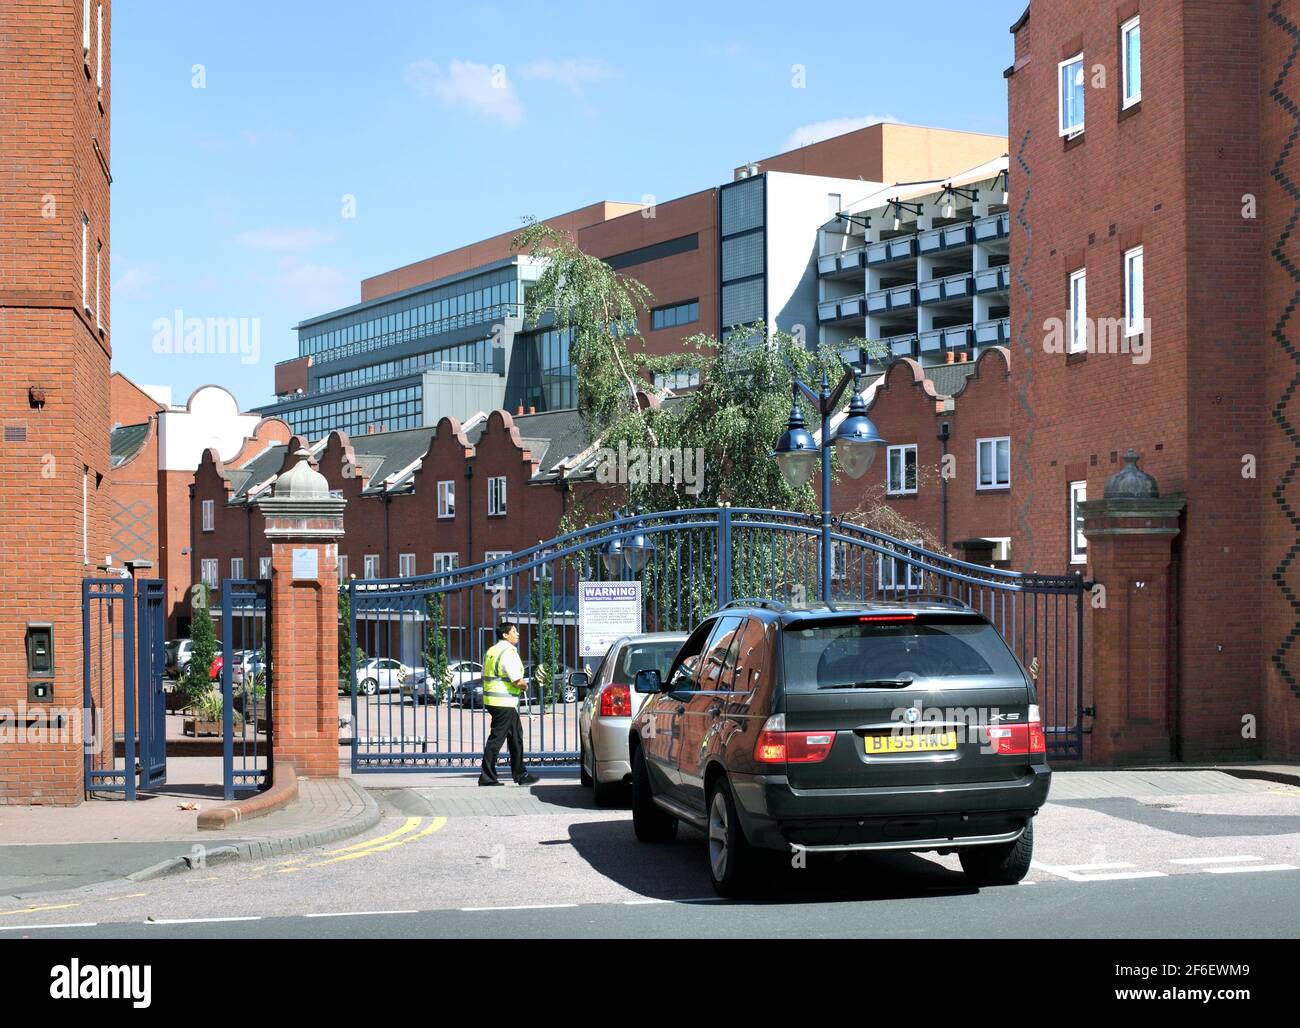 Portes de sécurité à l'entrée de Symphony court, Birmingham, une communauté fermée de nouvelles maisons et appartements près du centre-ville. Banque D'Images